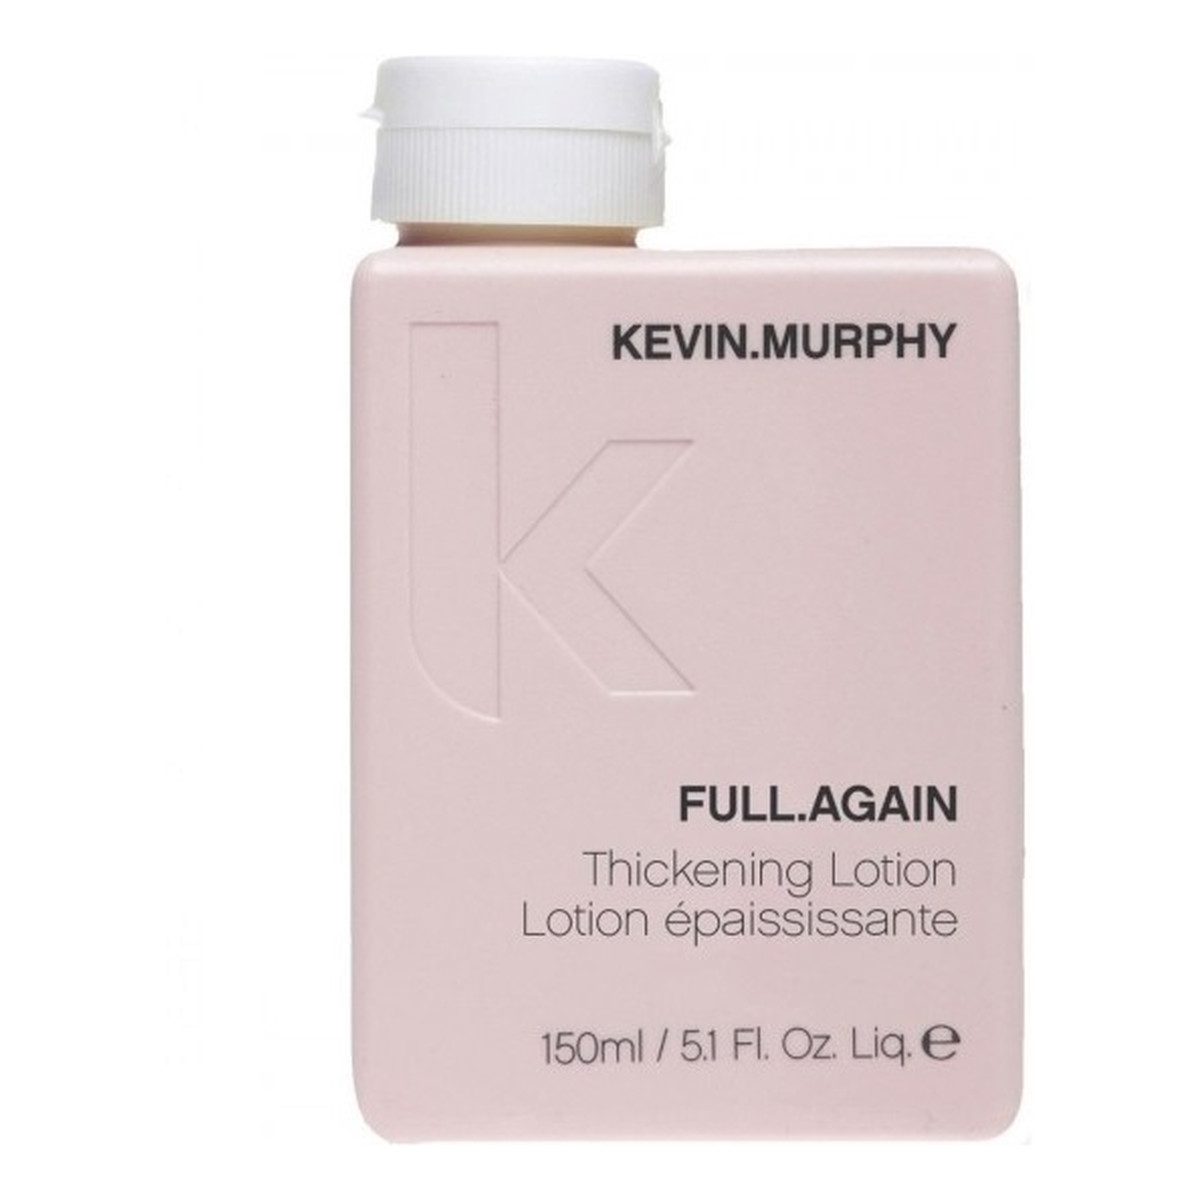 Kevin Murphy Full.again thickening lotion zwiększający objętość włosów 150ml